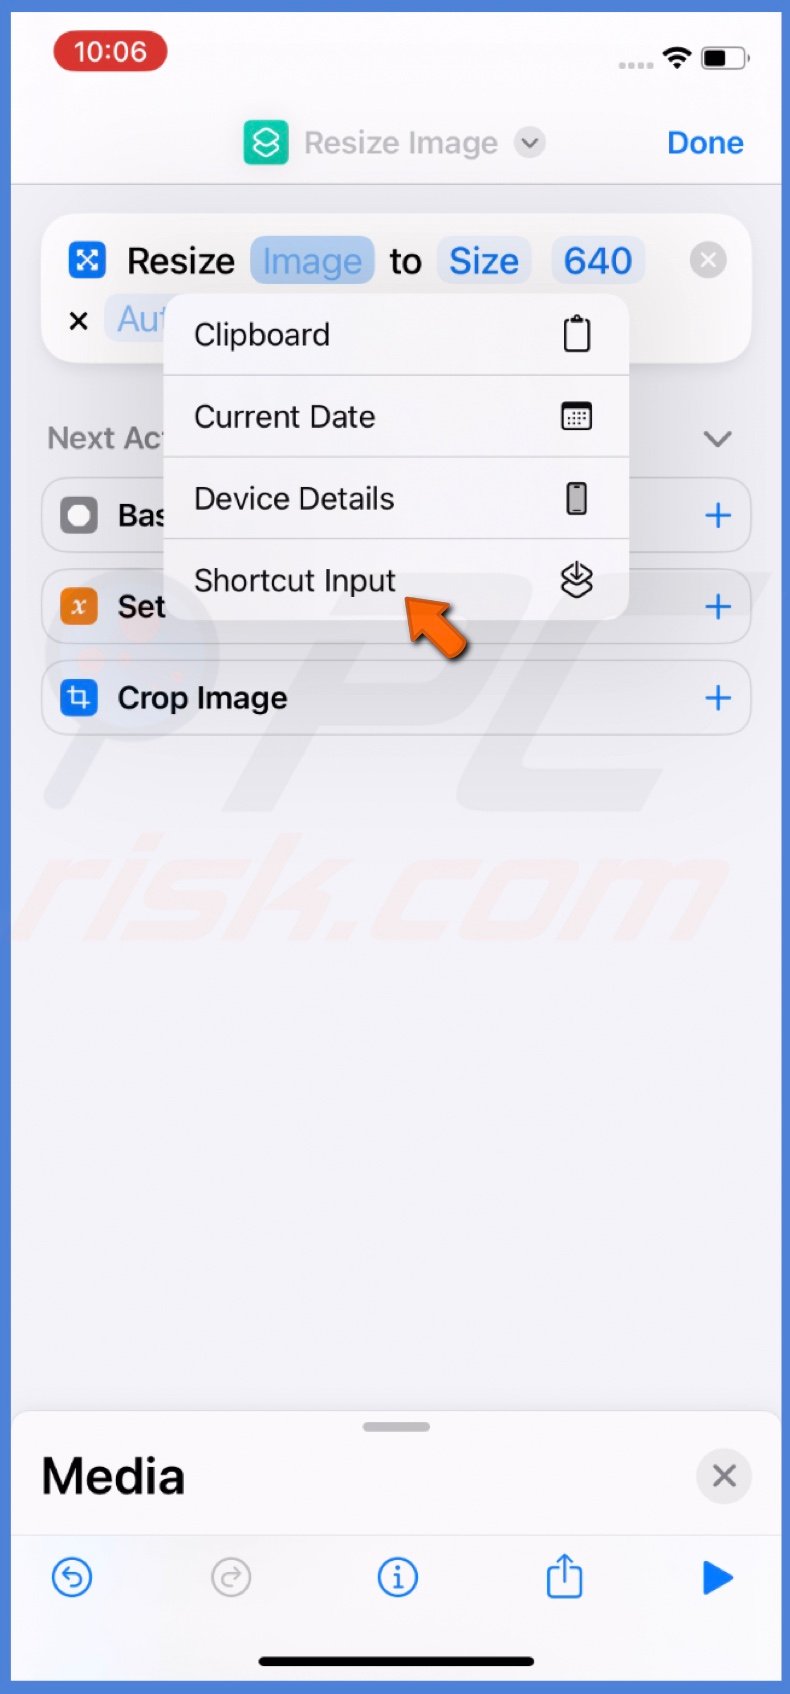 Select Shortcut Input